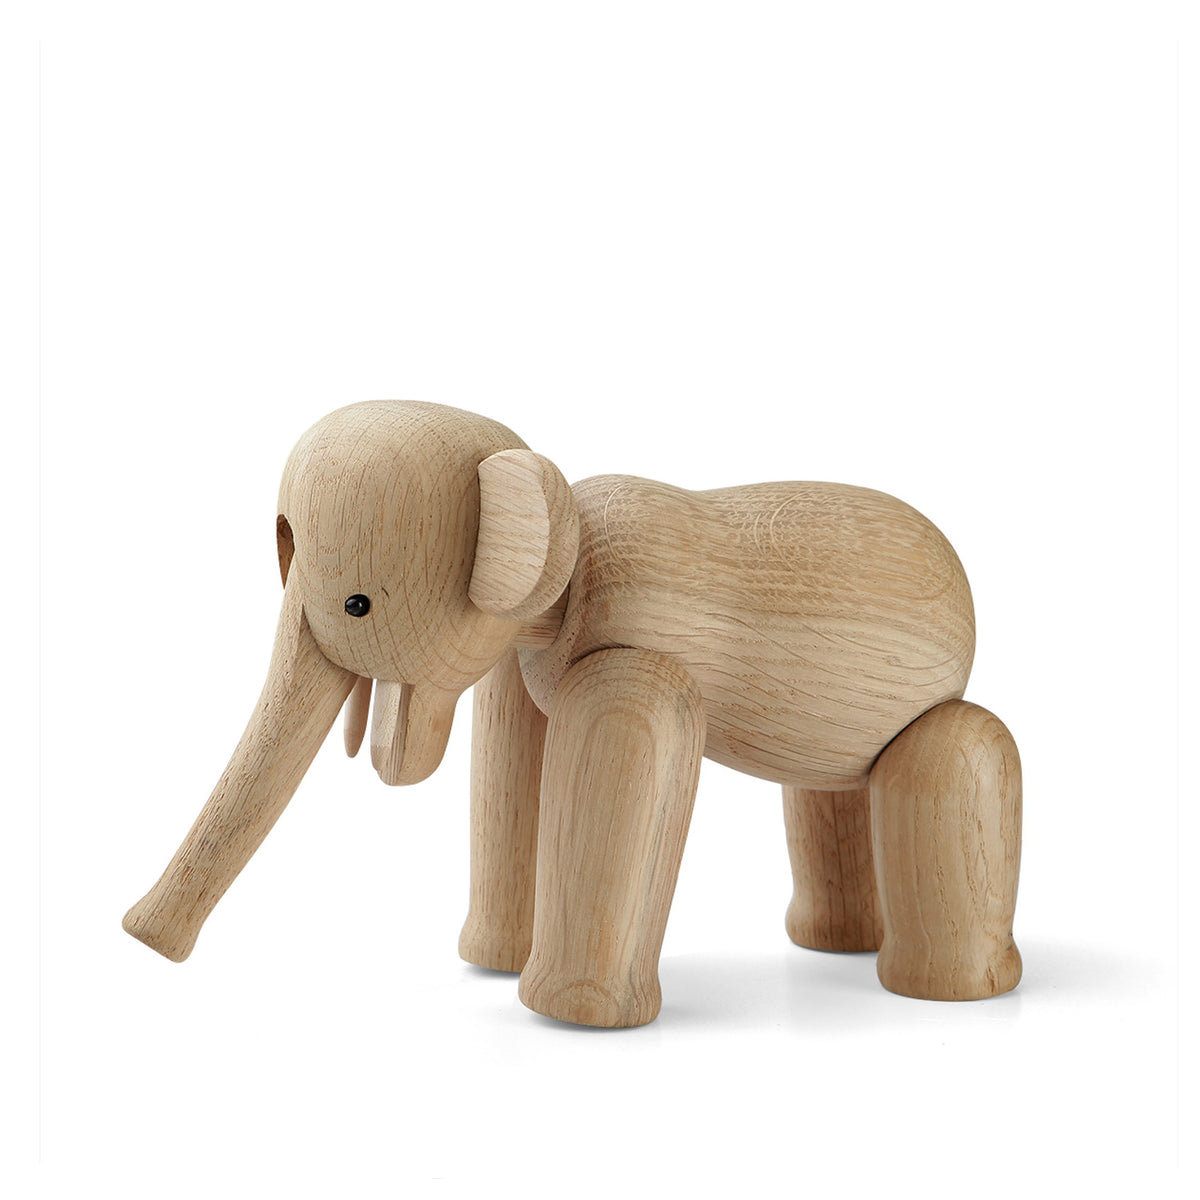 Rosendahl, Kay Bojesen Elephant, Reworked Large Elephant, Toys & Games,